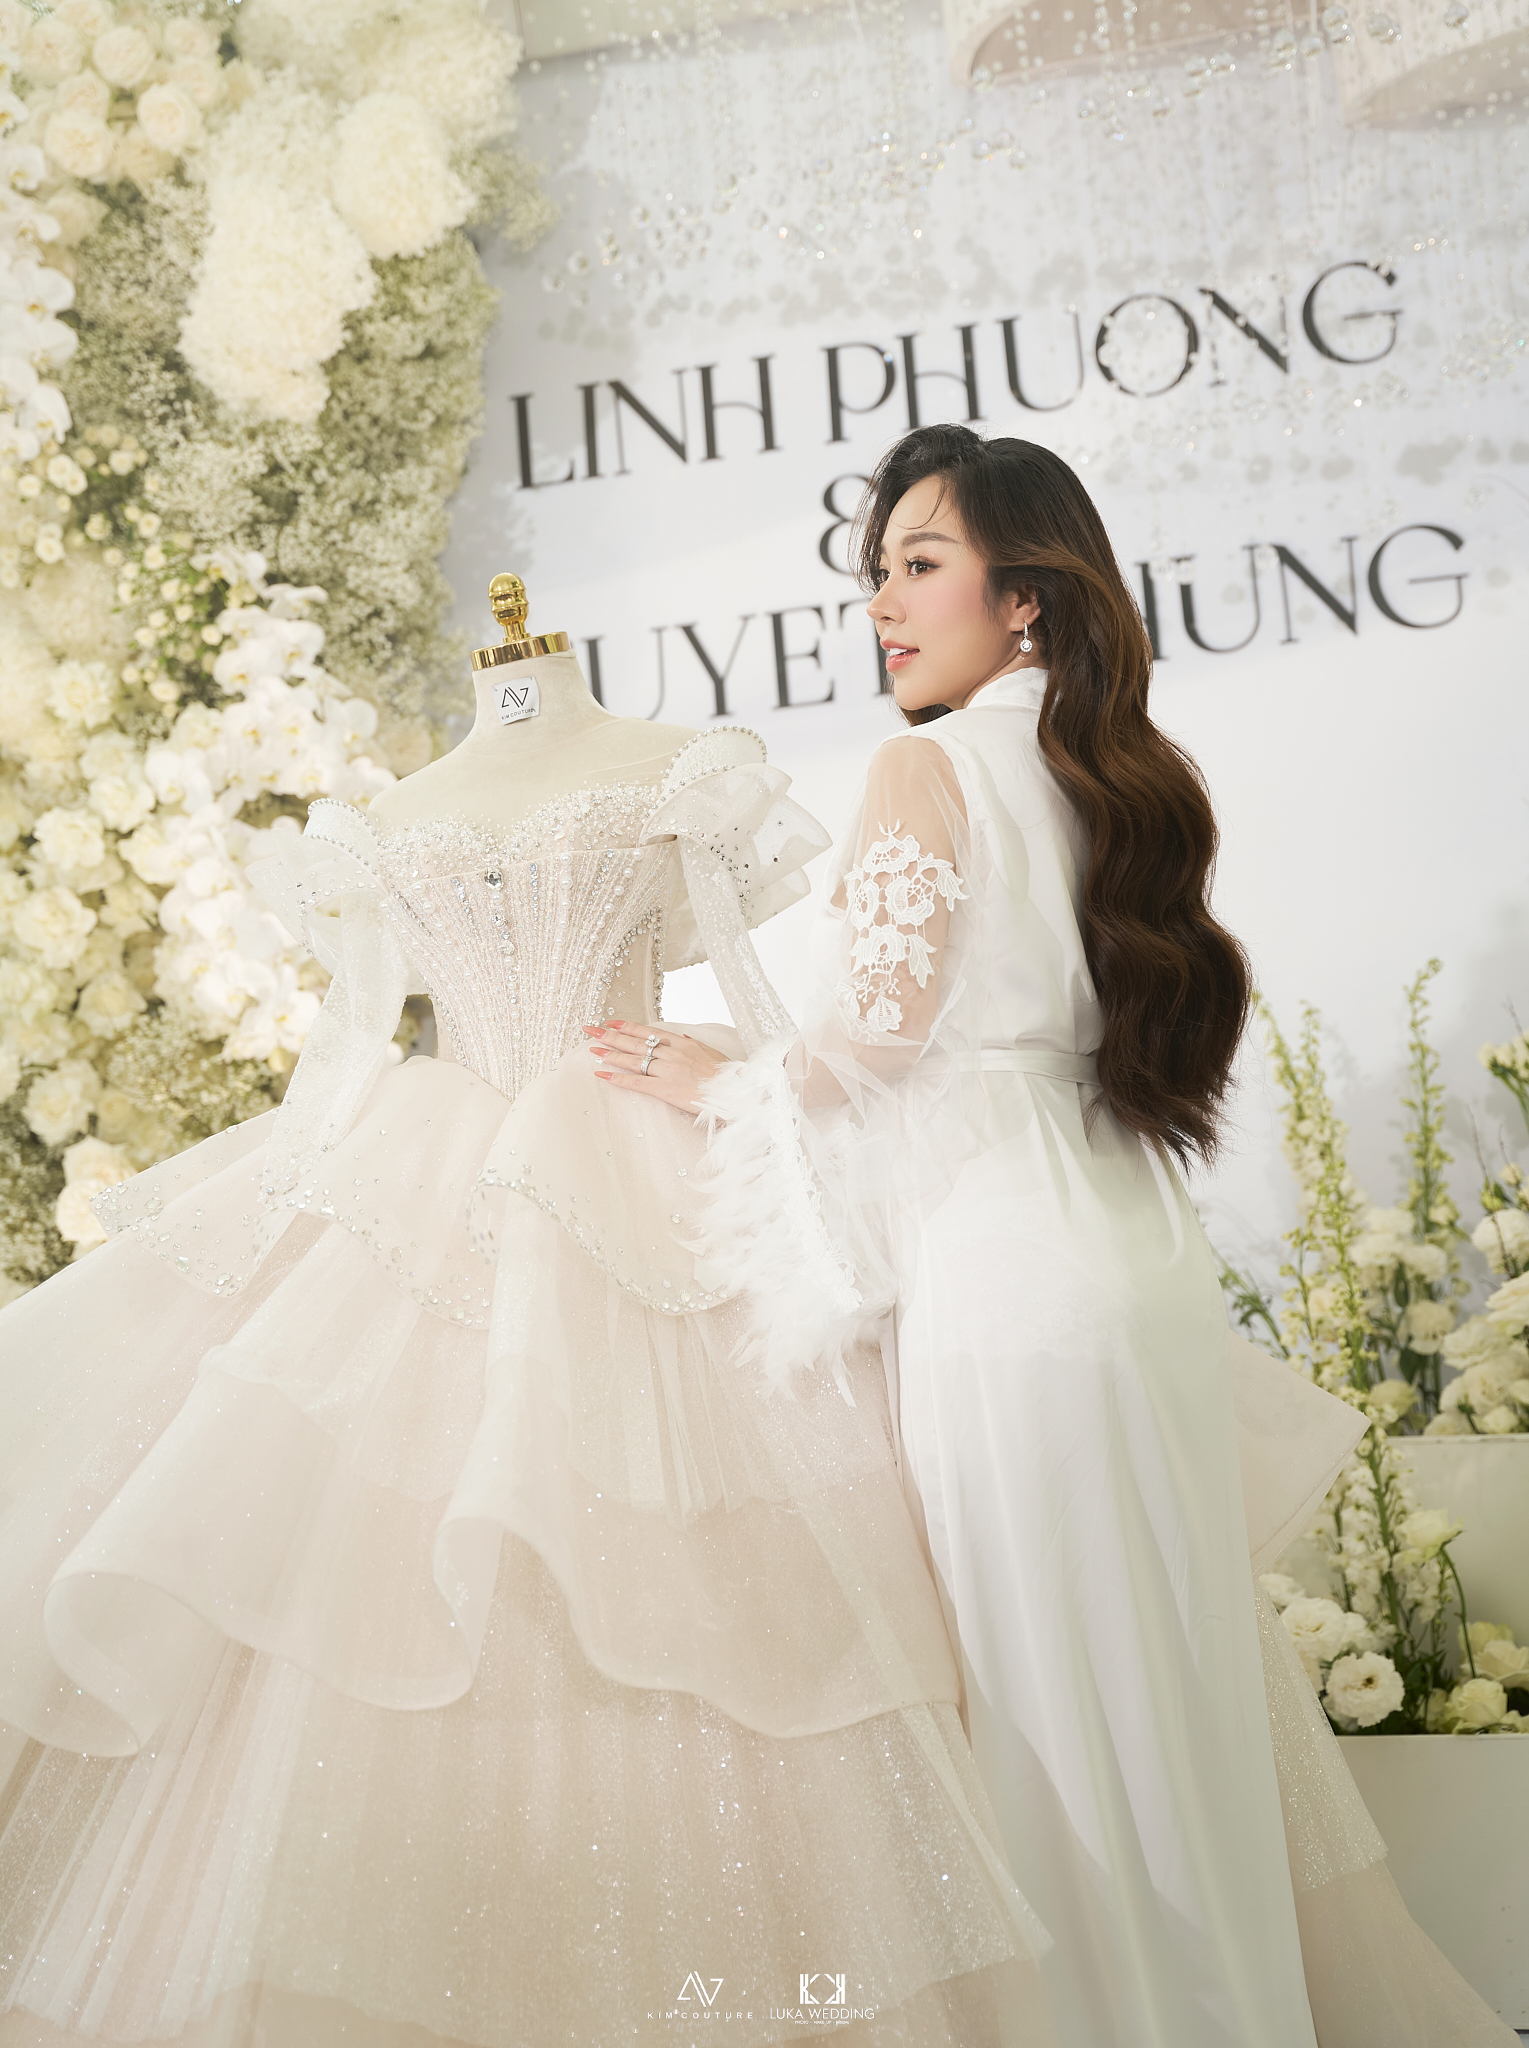 Cận cảnh 3 chiếc váy cưới hàng trăm triệu của bà xã TiTi (HKT) trong hôn lễ xa hoa - ảnh 2